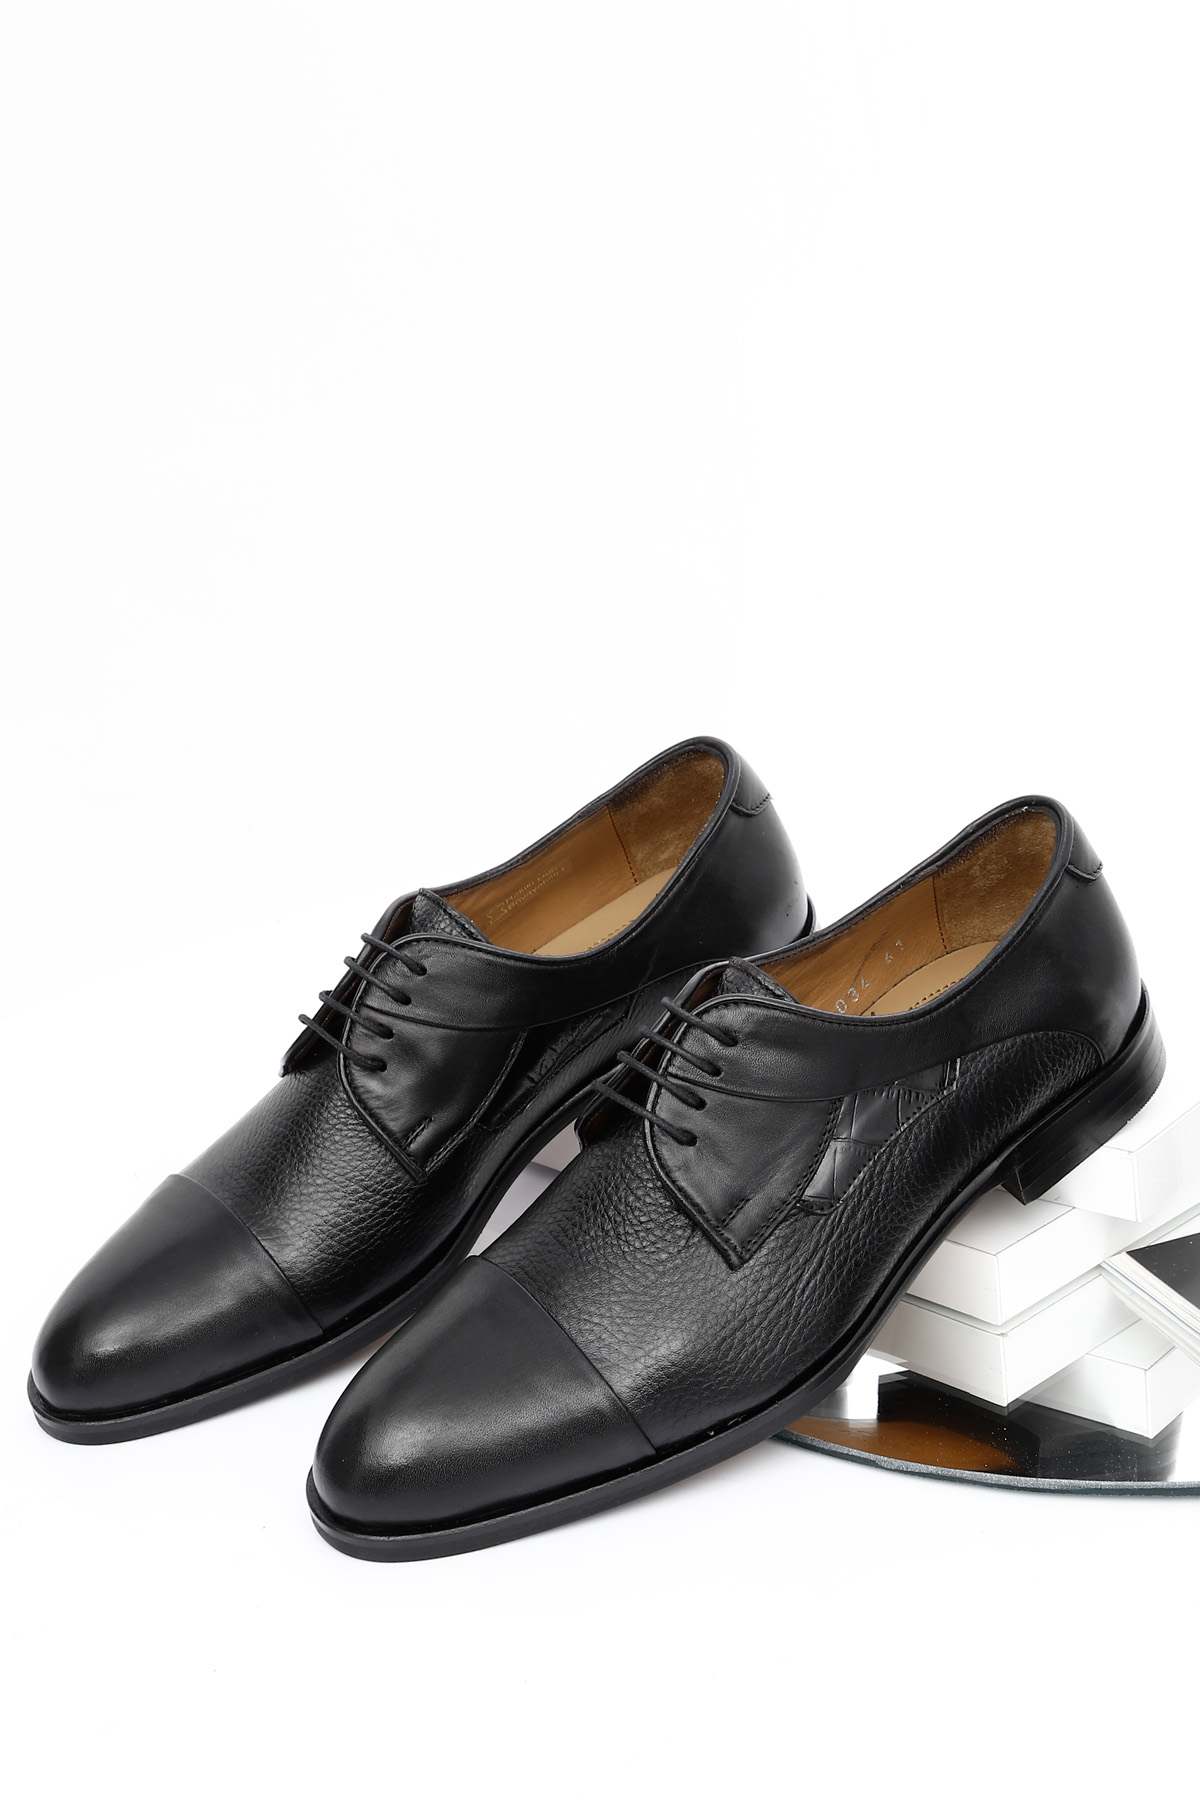 SİYAH Gön Platinum Hakiki Deri Bağcıklı Klasik Erkek Ayakkabı 34034 | Gön  Deri